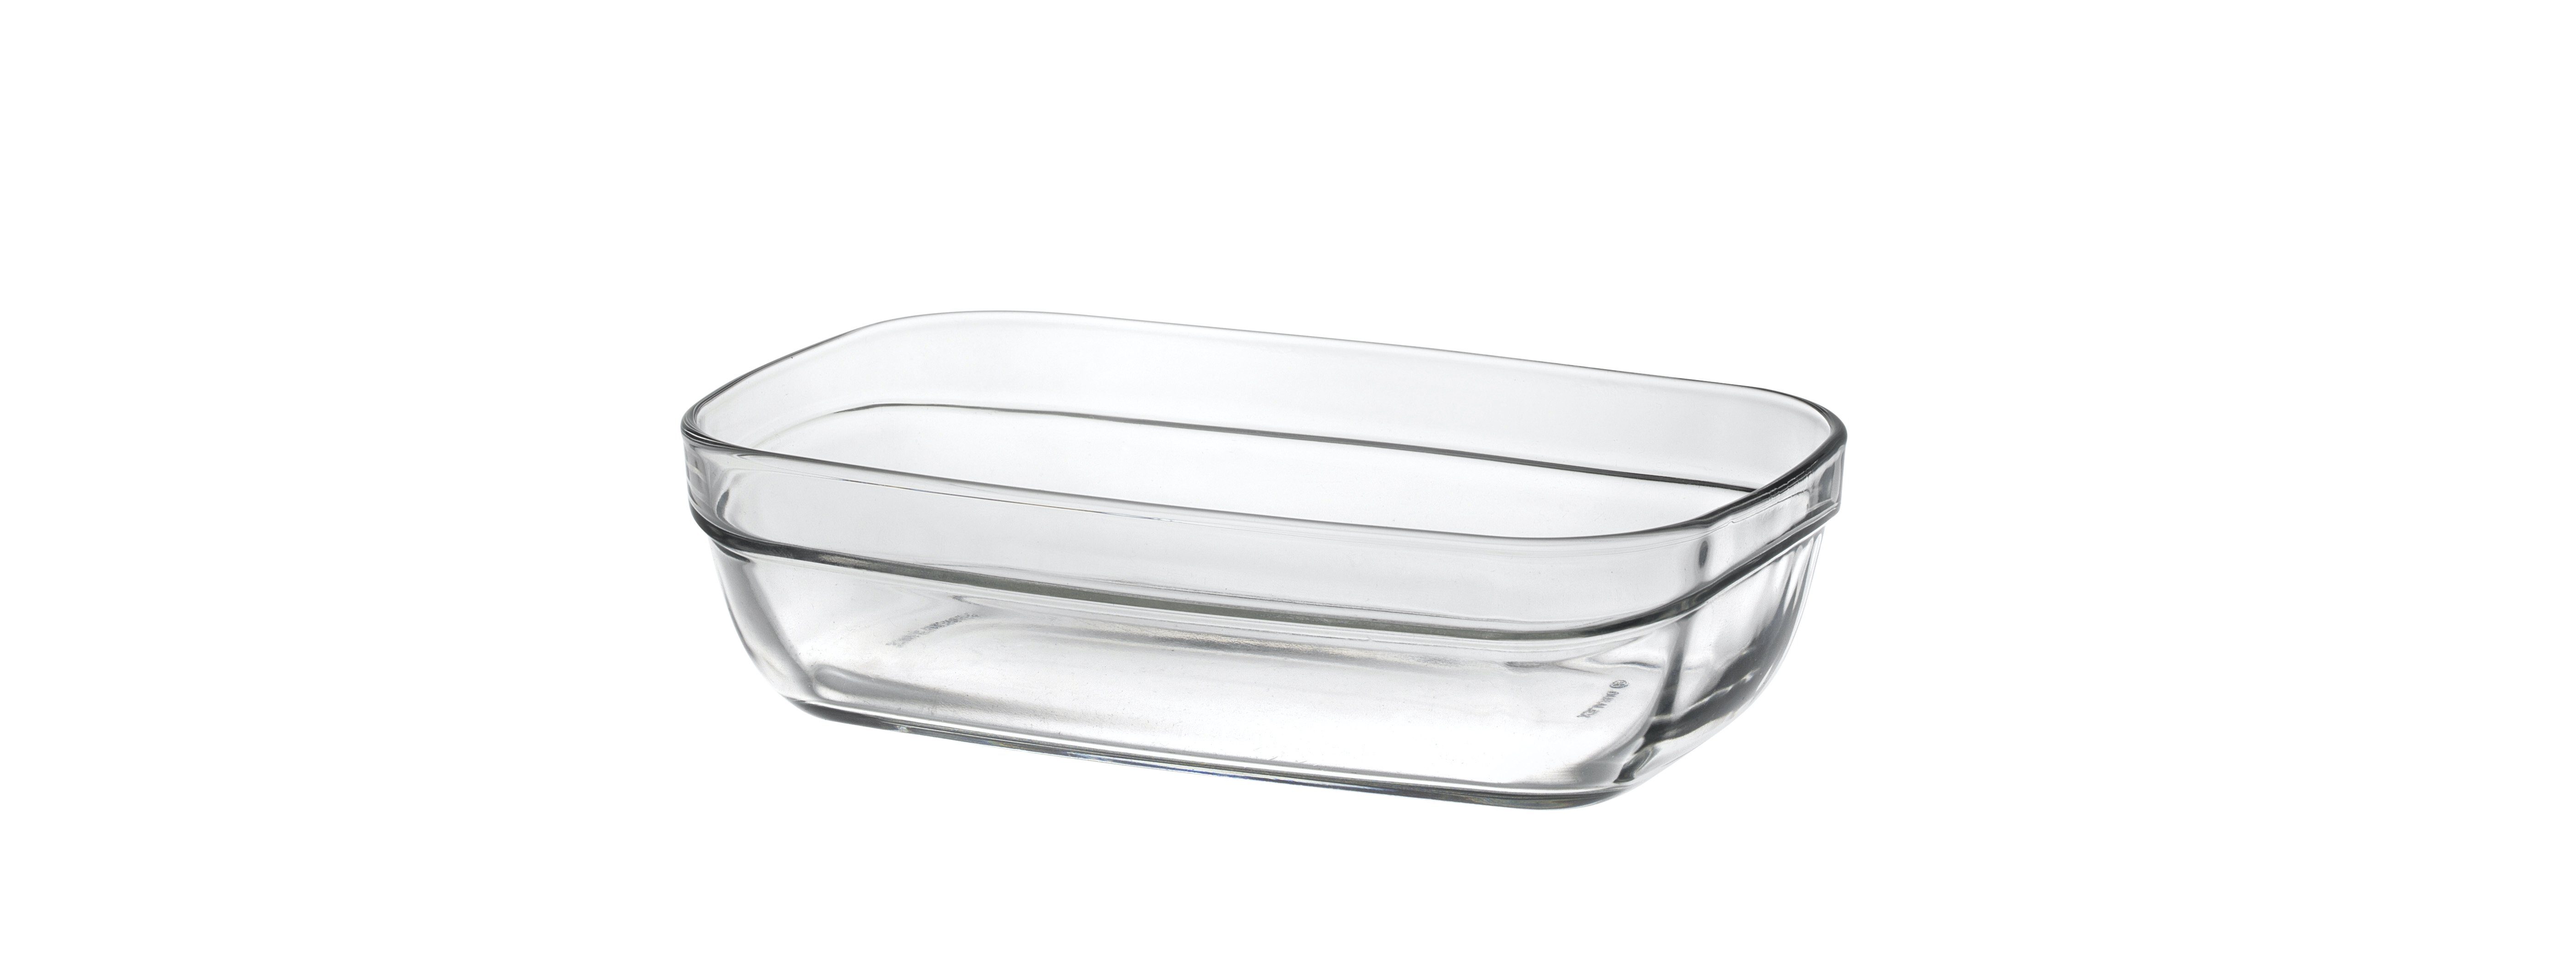 Stapelschale Duralex Ravier, transparent Salatschüssel Glas, Stück Schale Glas 370ml 1 Schüssel